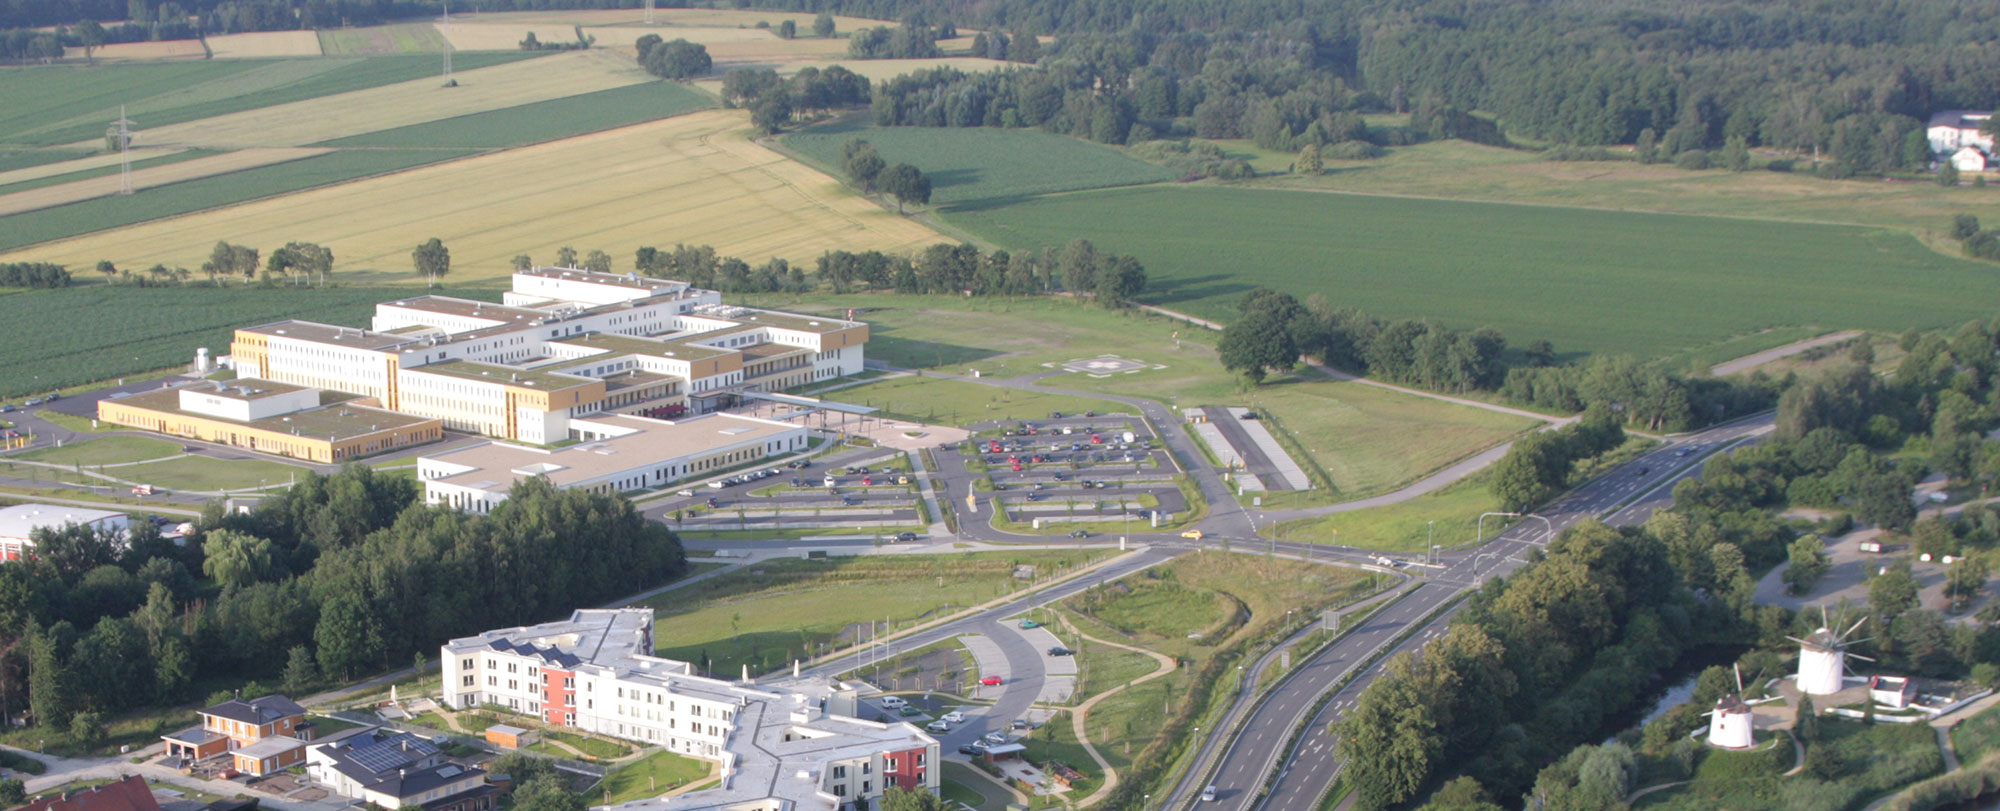 Klinikum Gifhorn im Norden der Stadt, Quelle: Keller Luftfoto